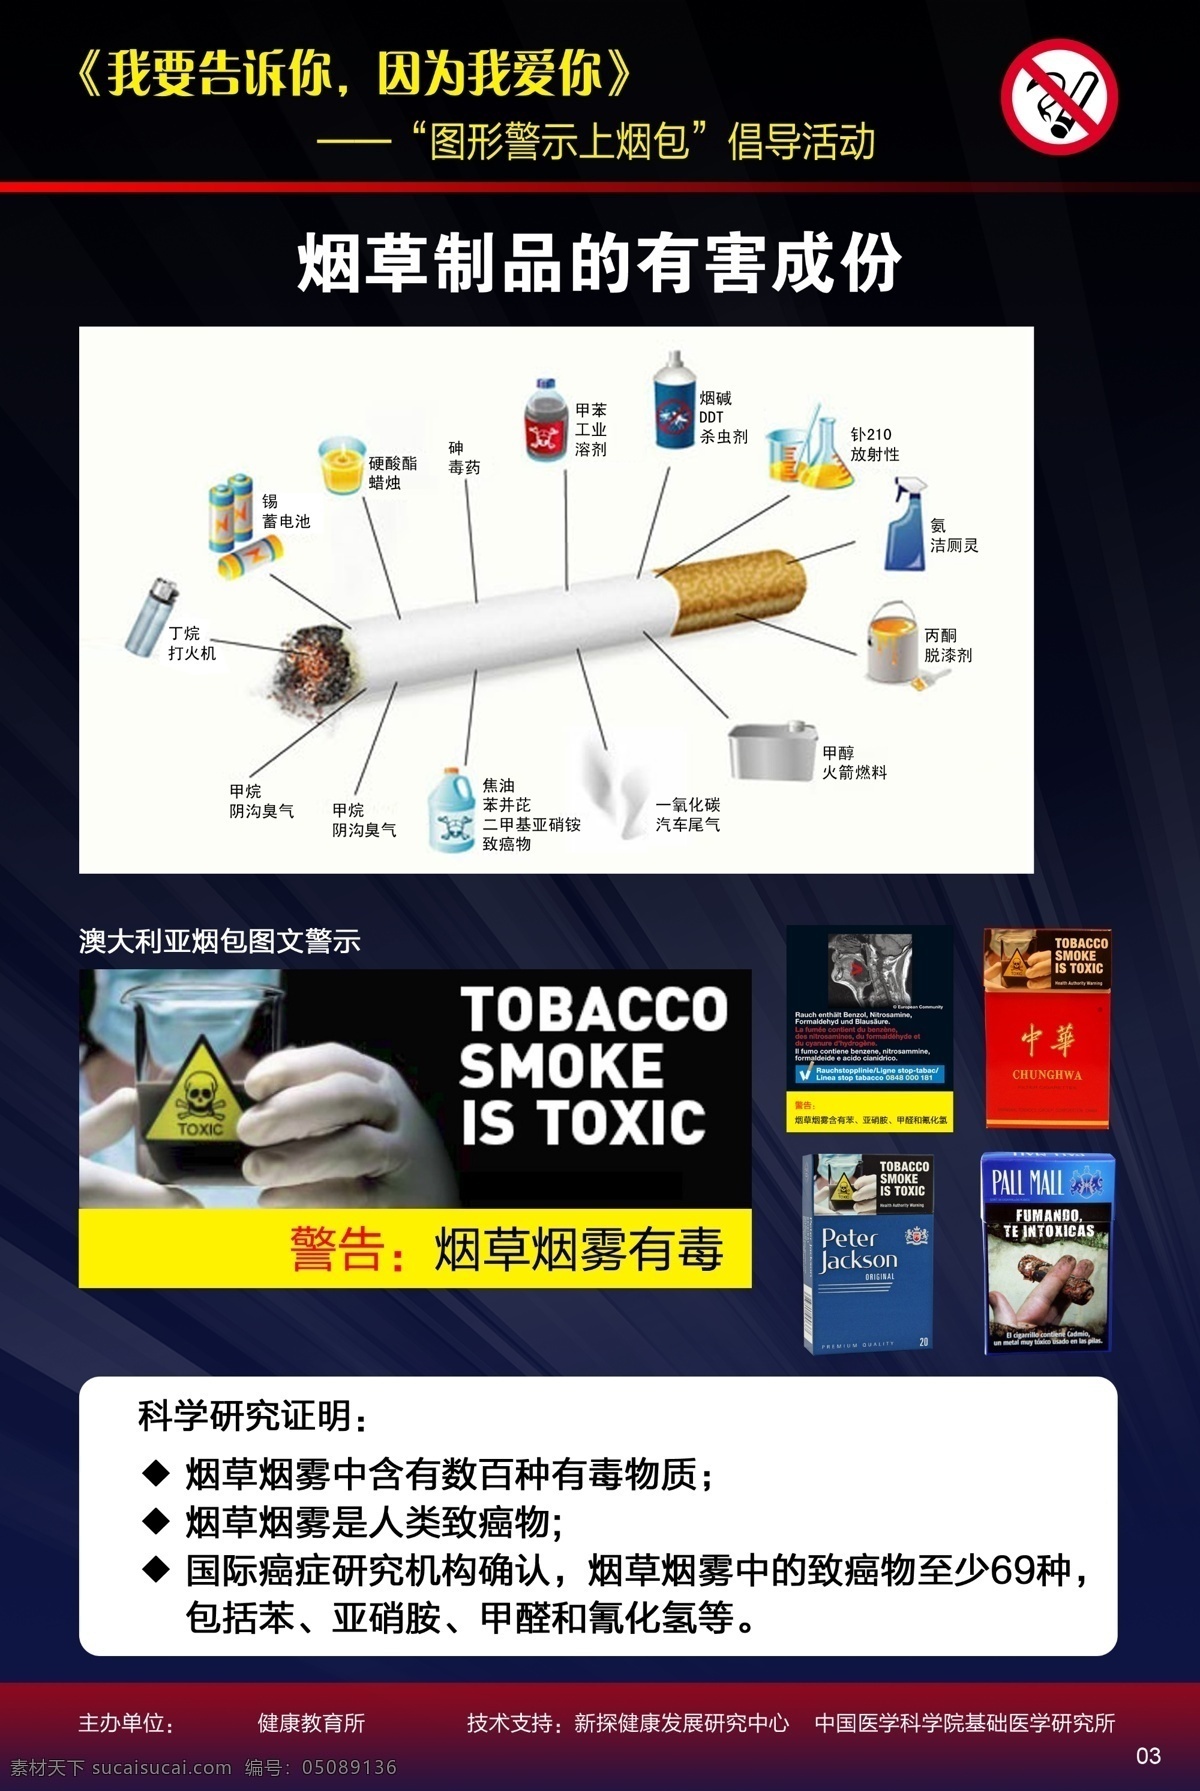 烟 包 警示 广告设计模板 健康 科普宣传 吸烟 源文件 展板模板 烟包警示 肺展板 喉癌 宣传海报 宣传单 彩页 dm